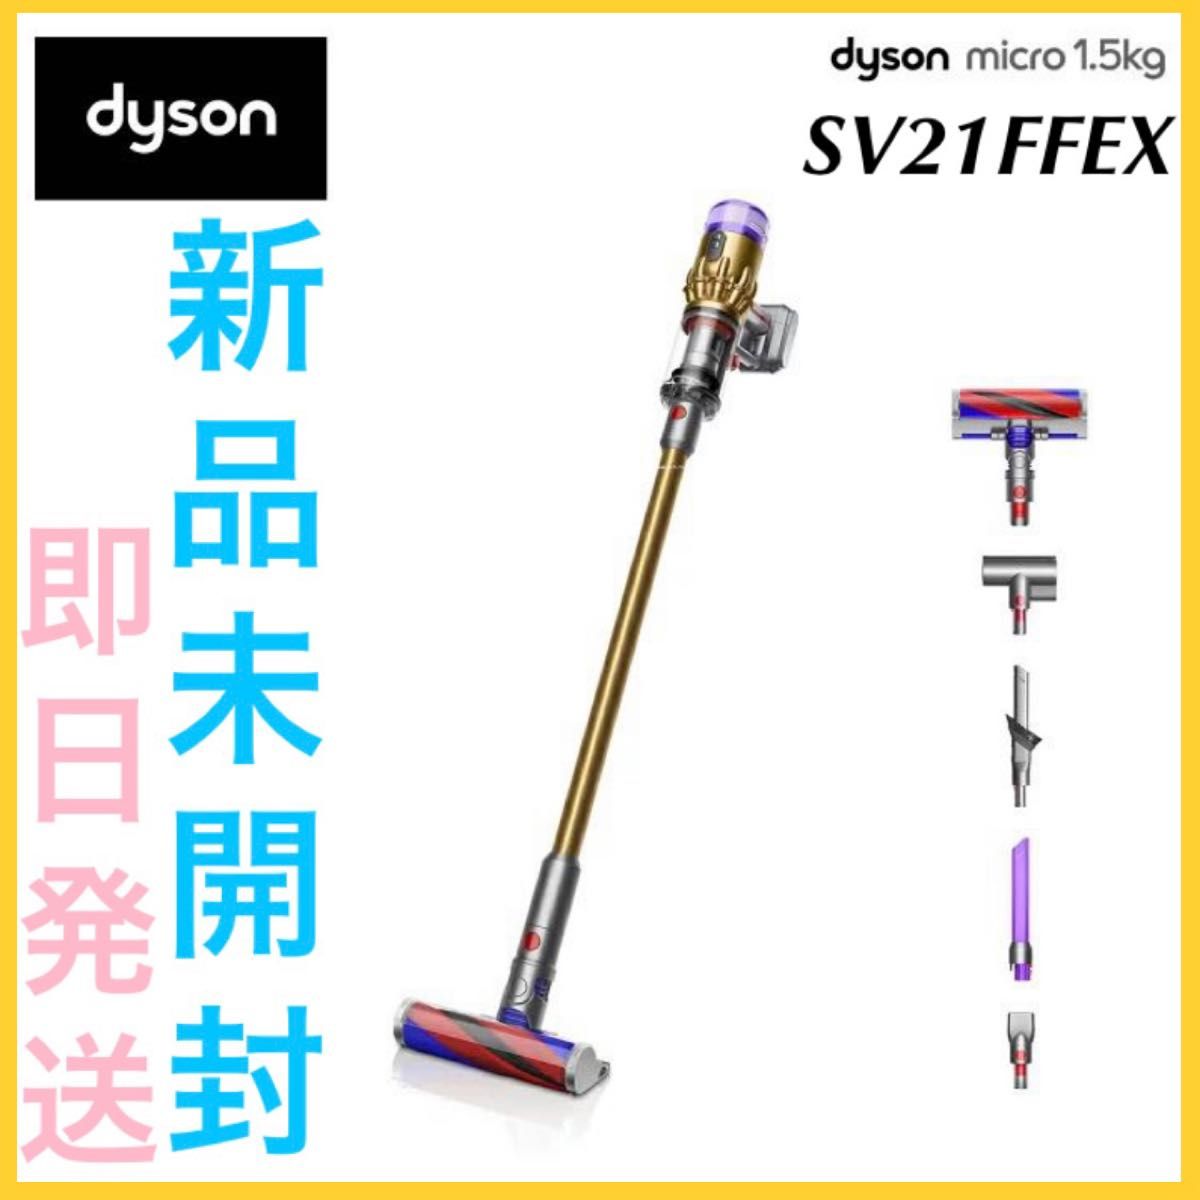 Dyson Micro 1.5kg dyson SV21FFEX 新品 未使用-